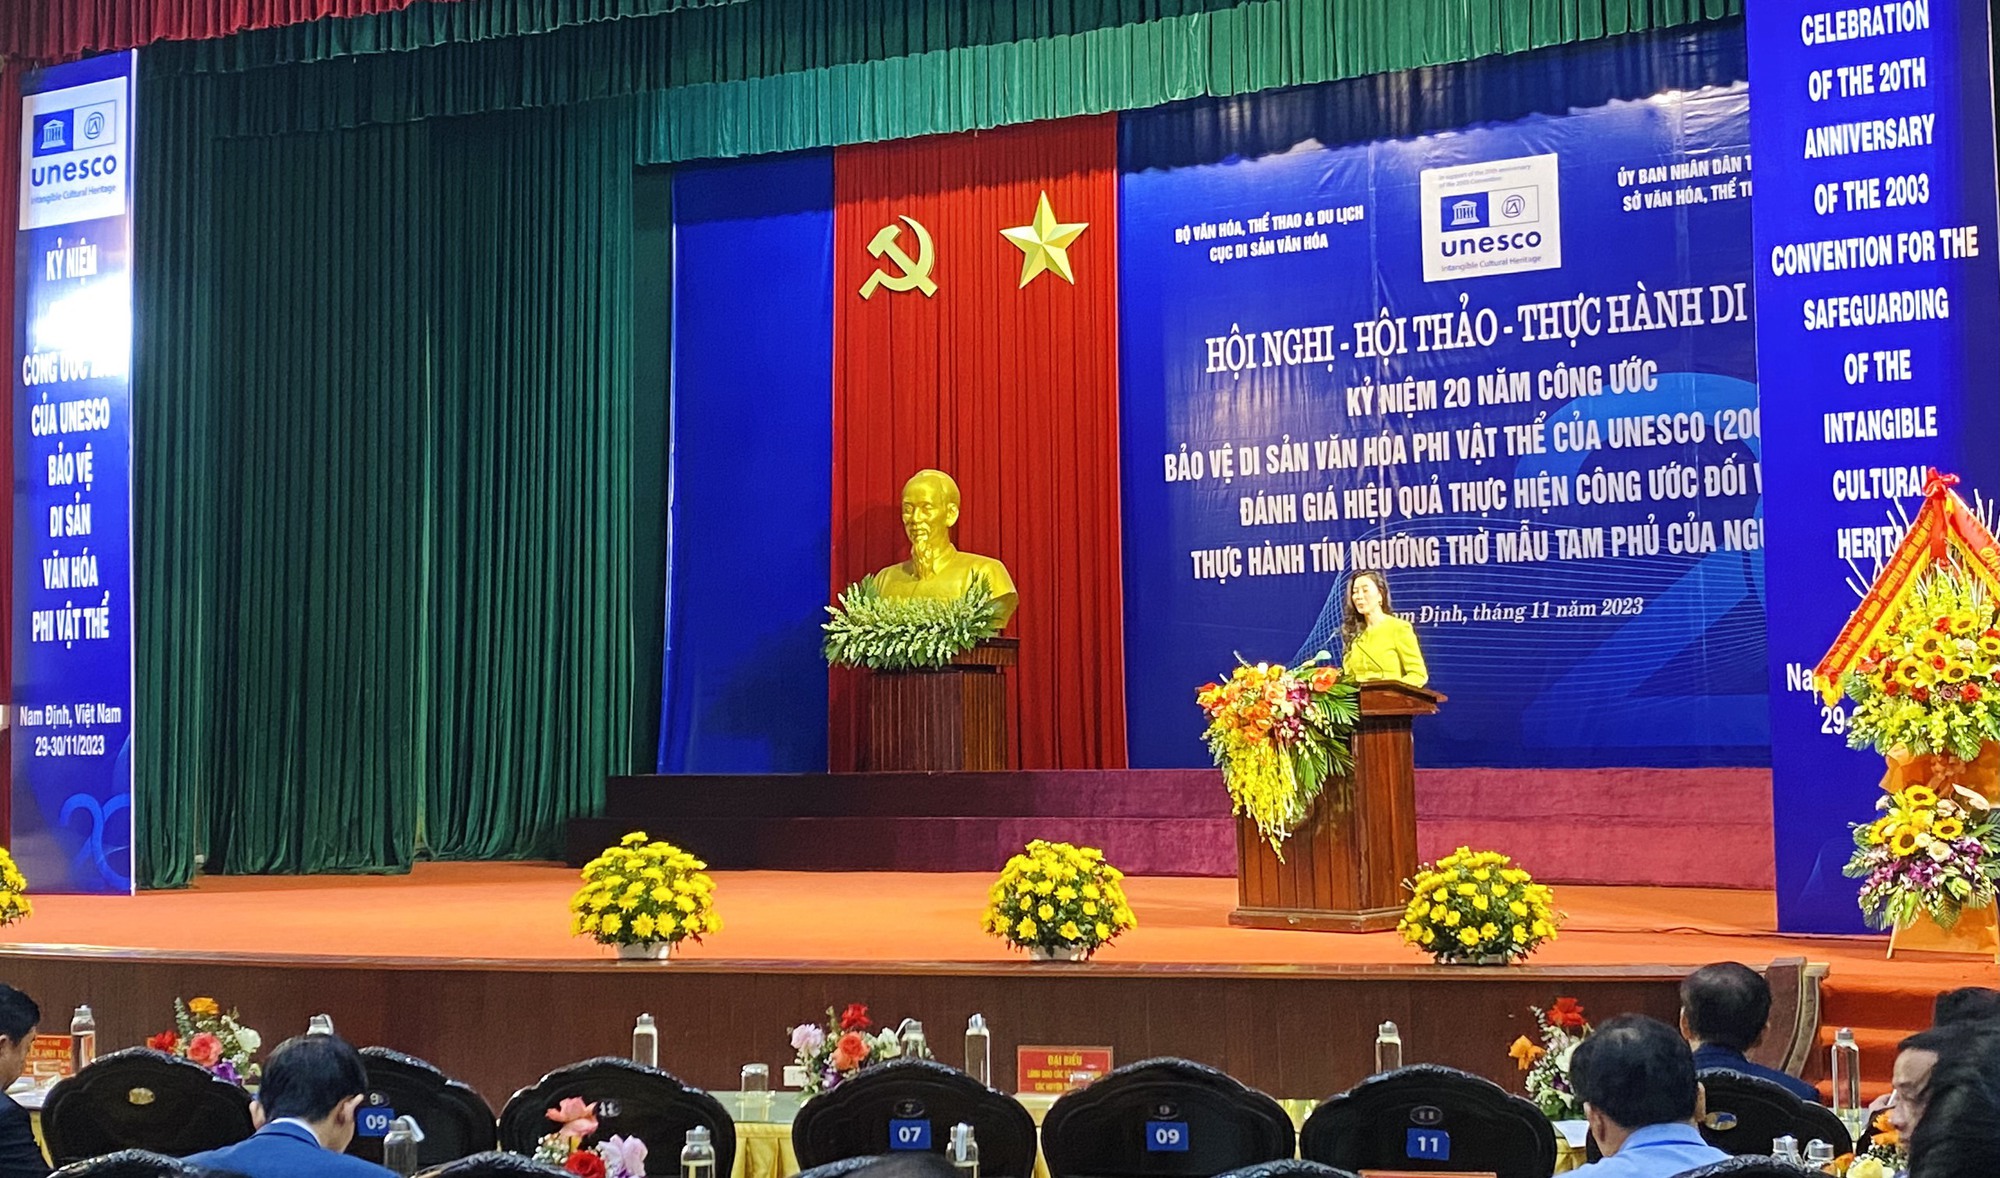 Thực hành di sản ở Việt Nam sau 20 năm tham gia công ước Bảo vệ Di sản văn hóa phi vật thể của UNESCO  - Ảnh 2.